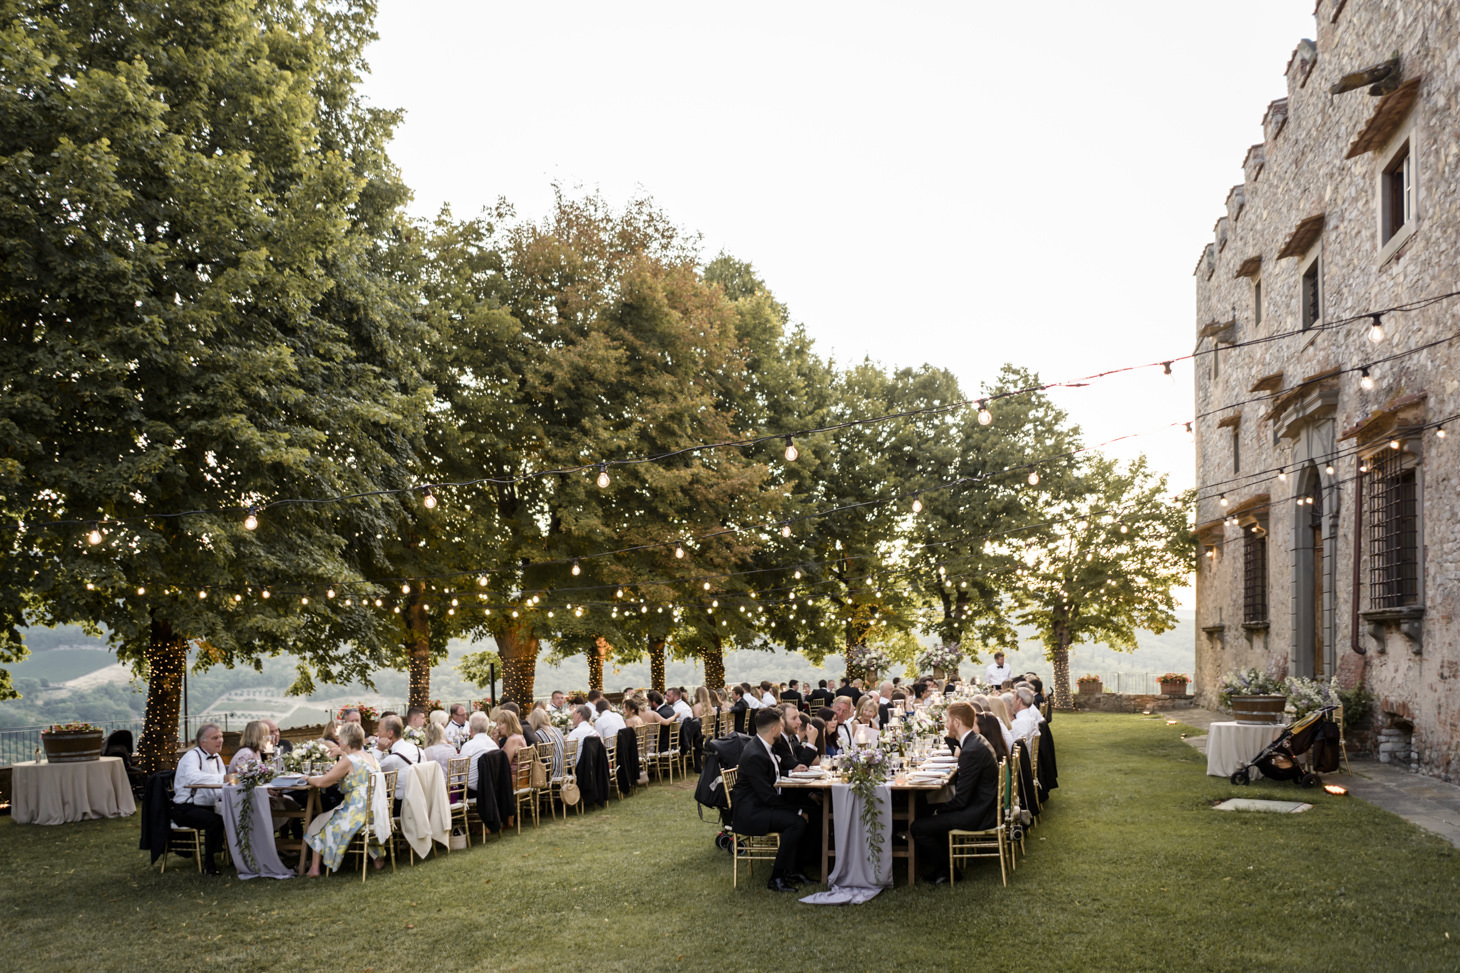 Wedding banquet at Castello di Meleto